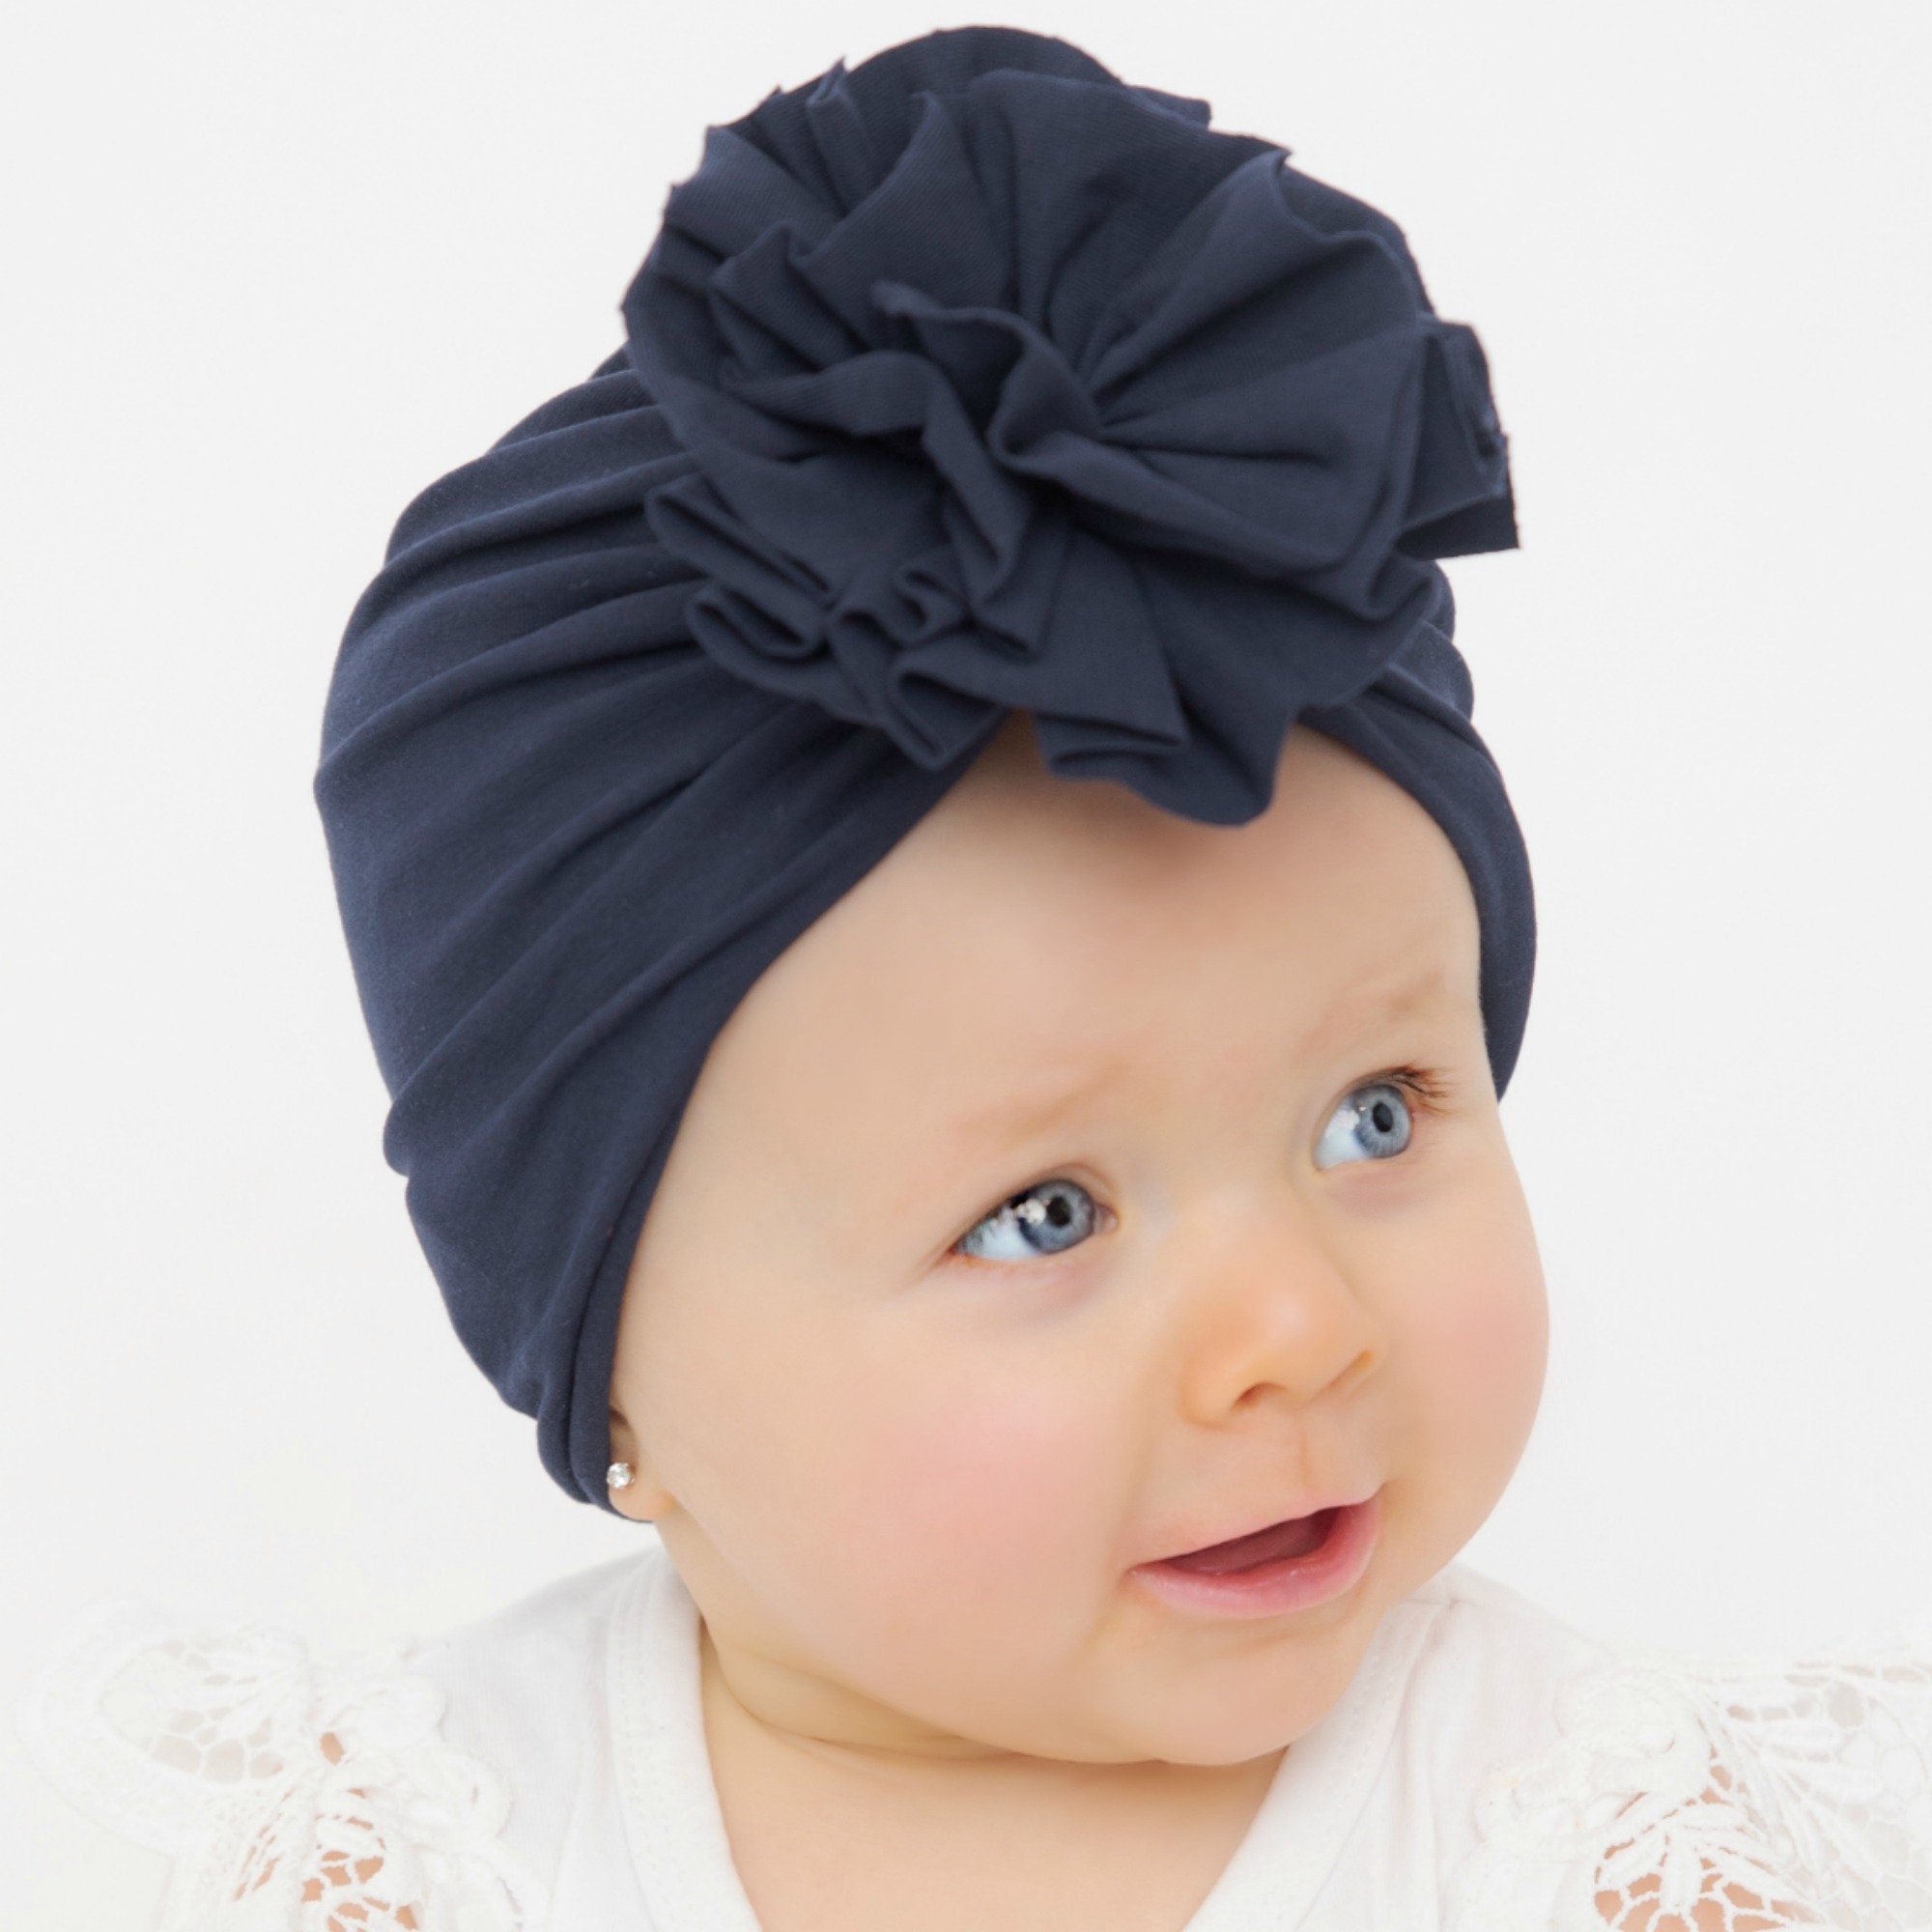 Kleinkind Mütze Floral Turban Cap Neugeborenen Mädchen Kopf wickeln BeRSZ8 Baby 